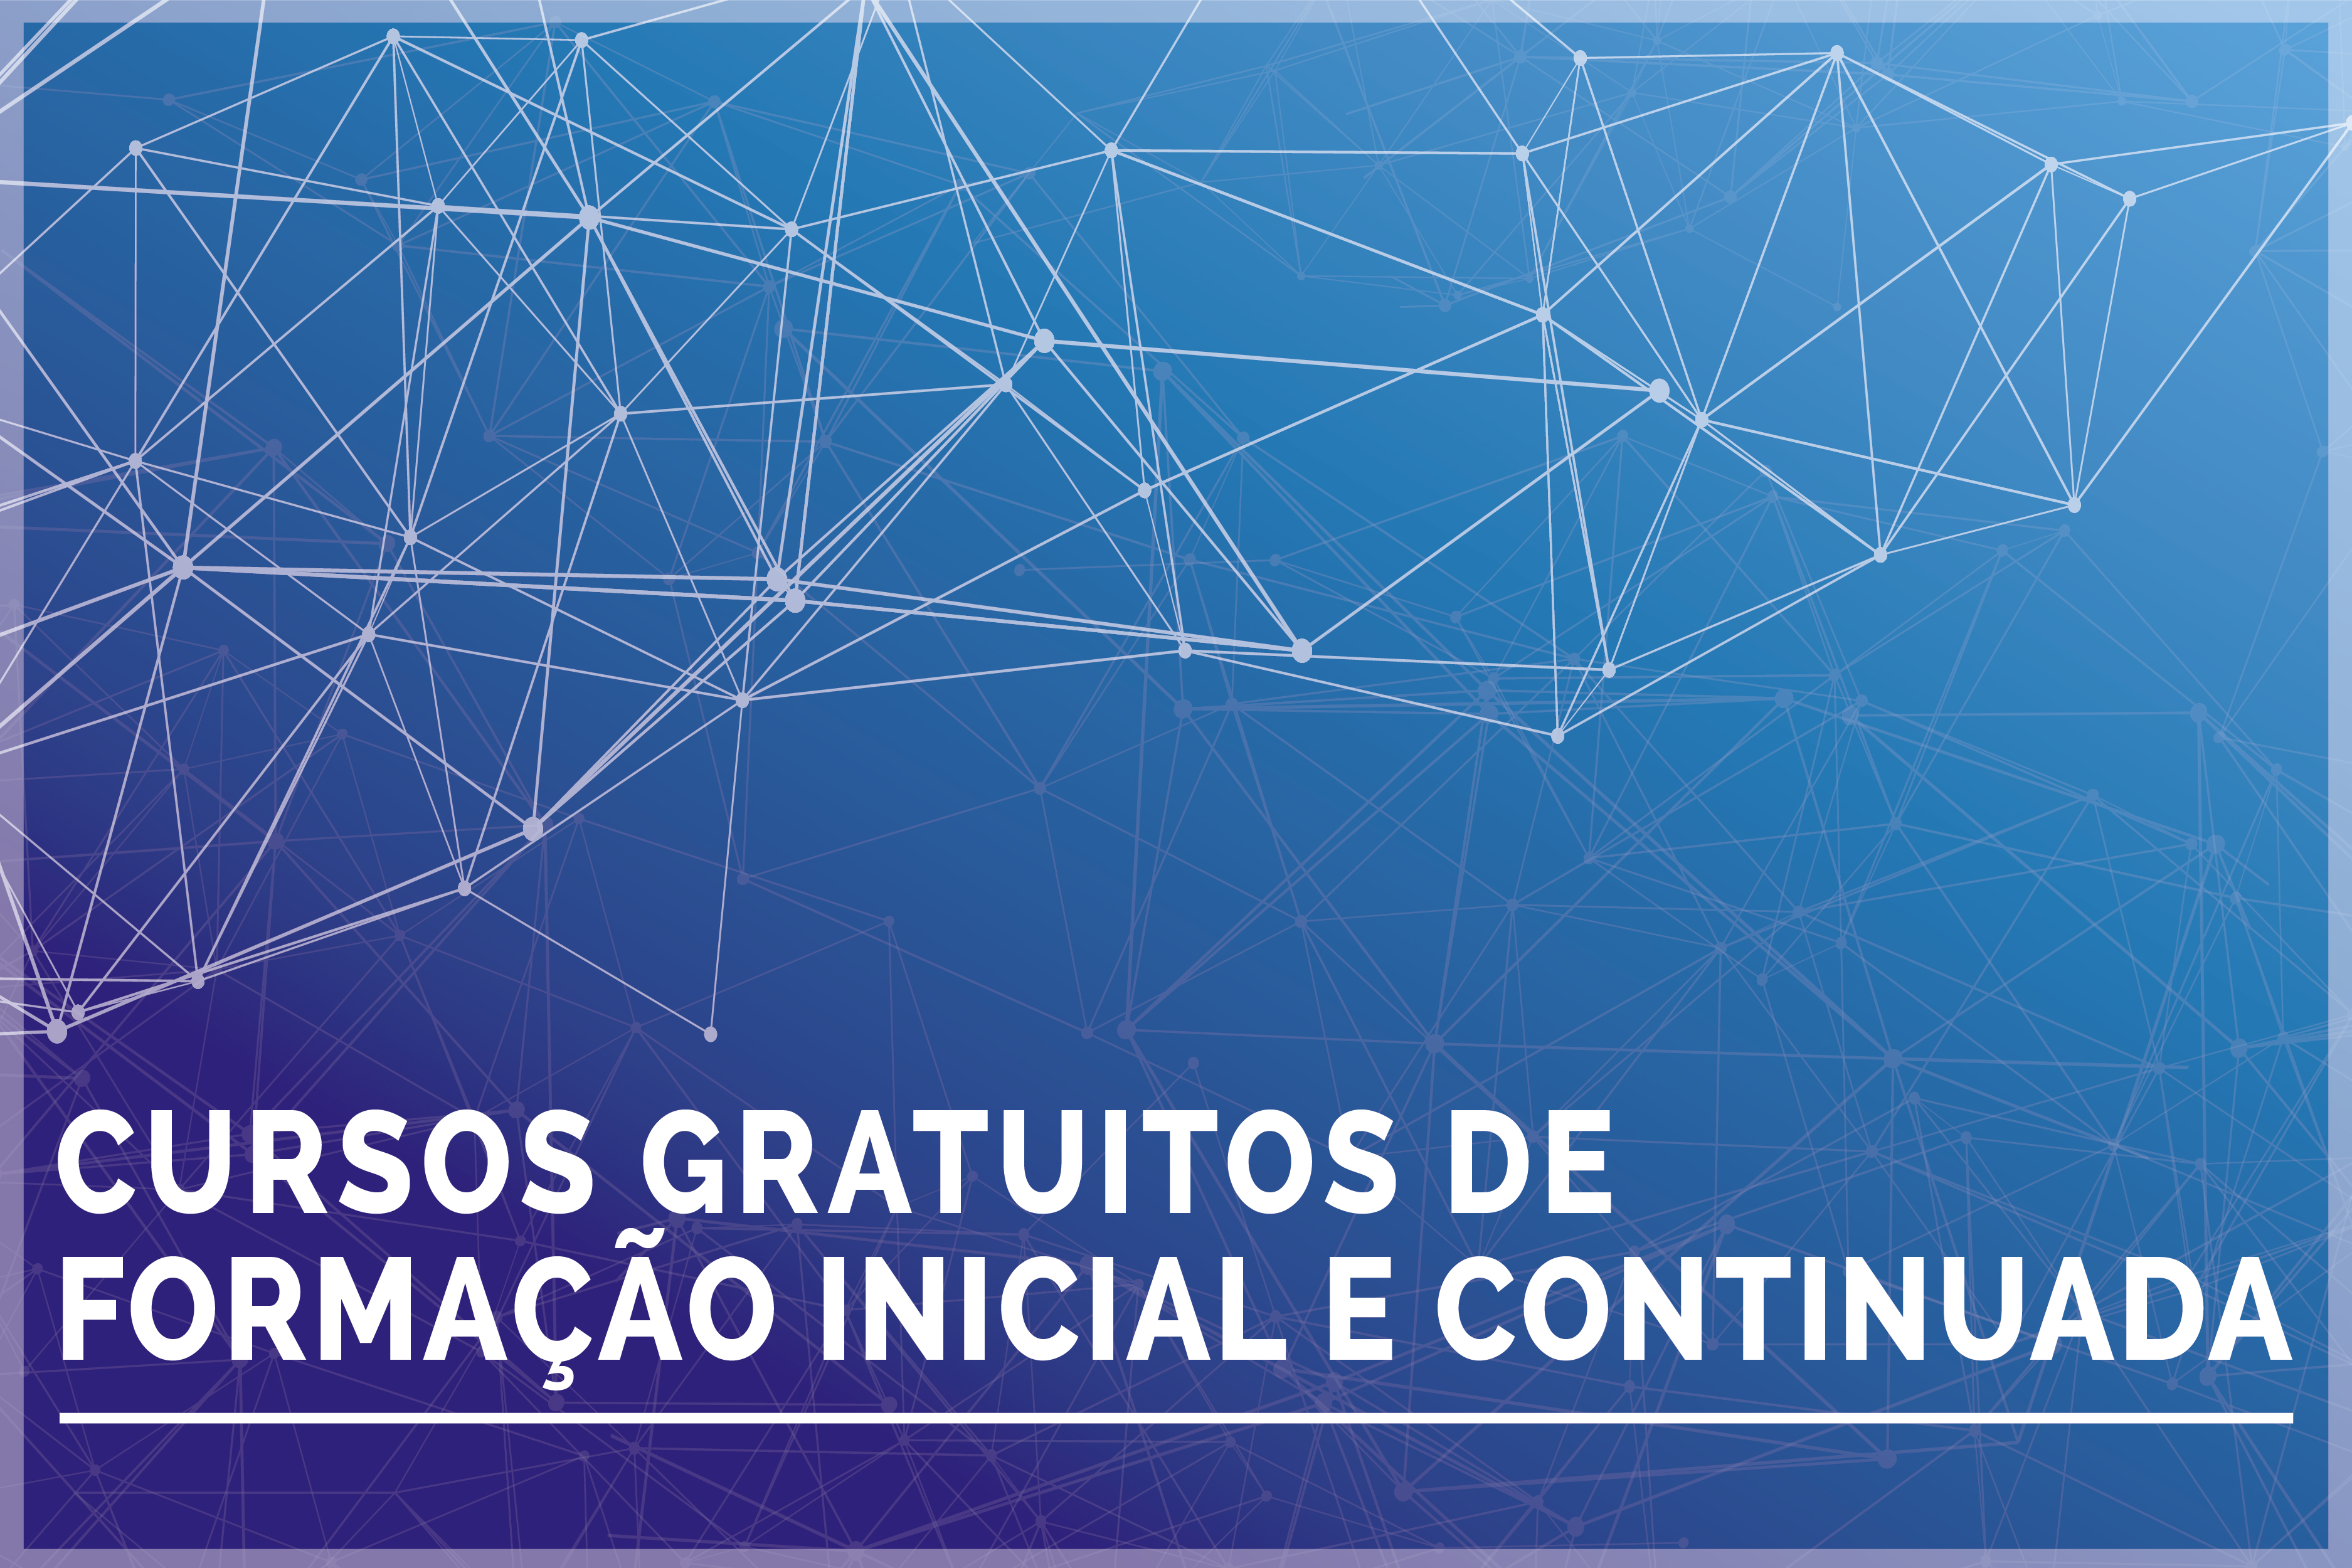 Campus Avançado São João da Barra lança edital de Cursos de Formação Continuada